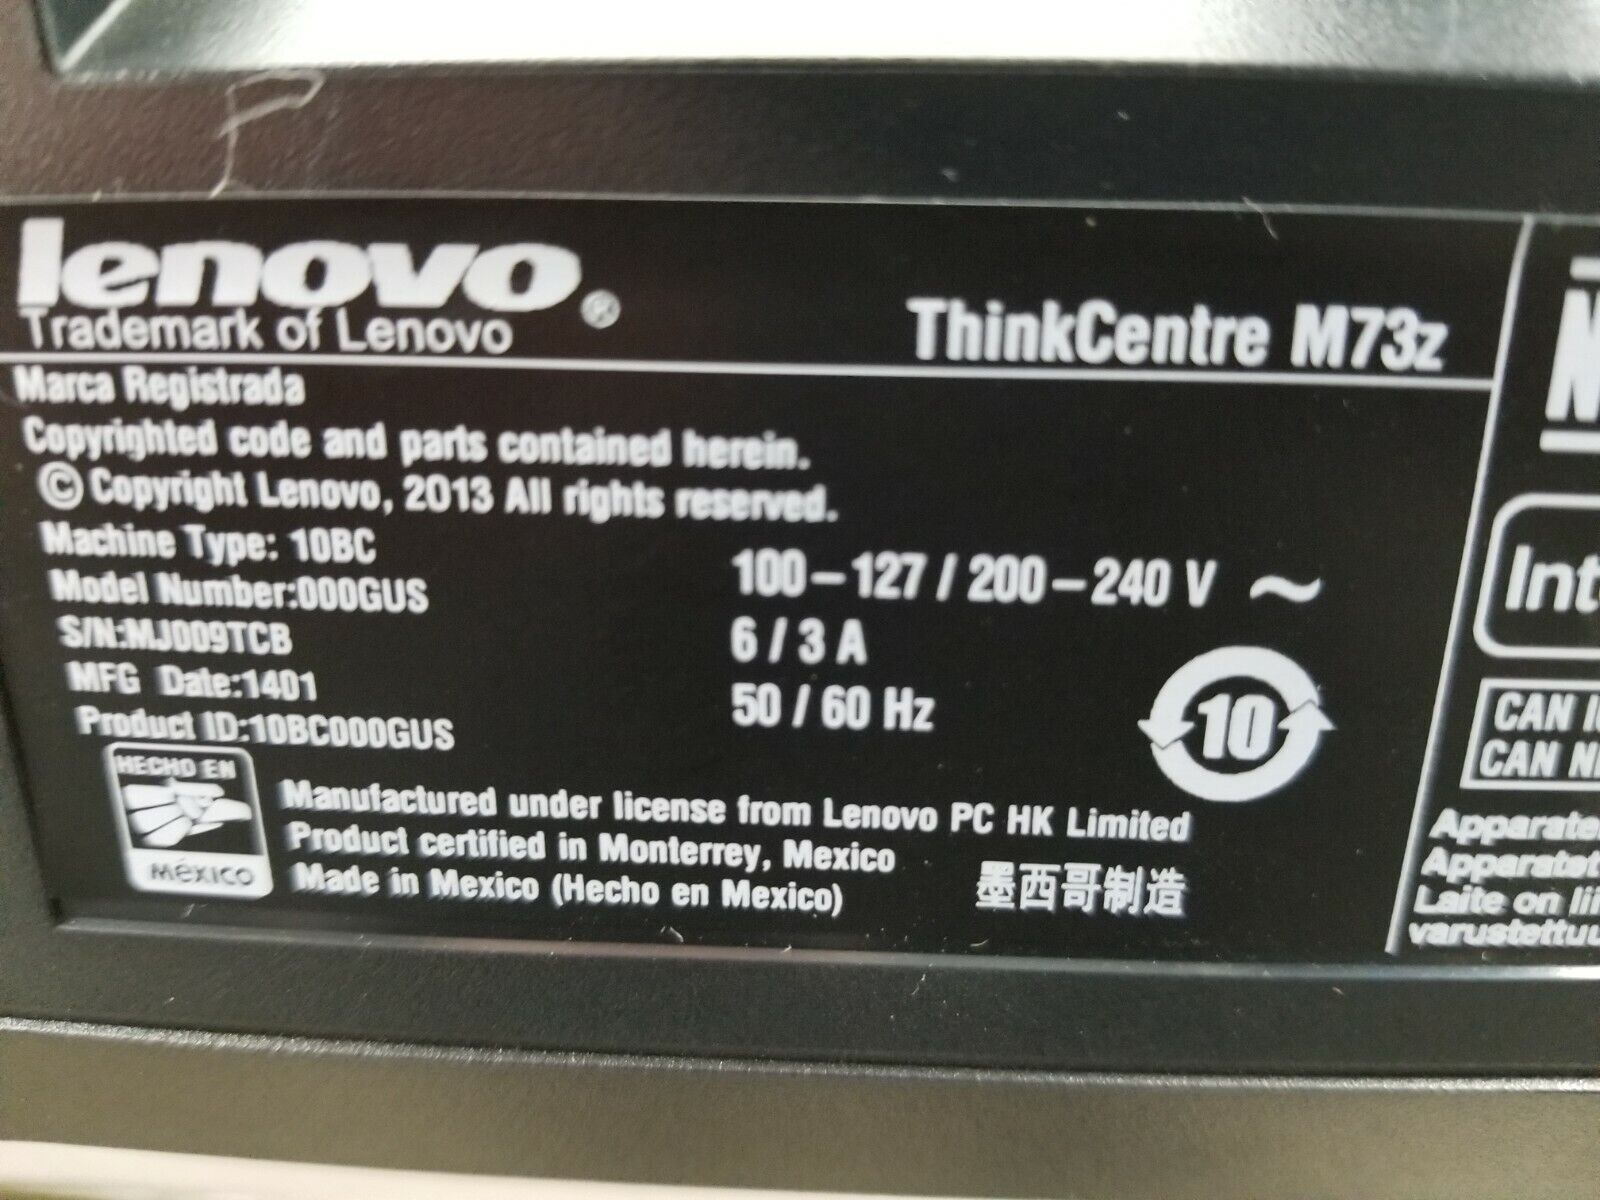 Lenovo ThinkCentre M73z 20" AIO Intel Pentium G3220 3.0GHz 4GB RAM No HDD No OS